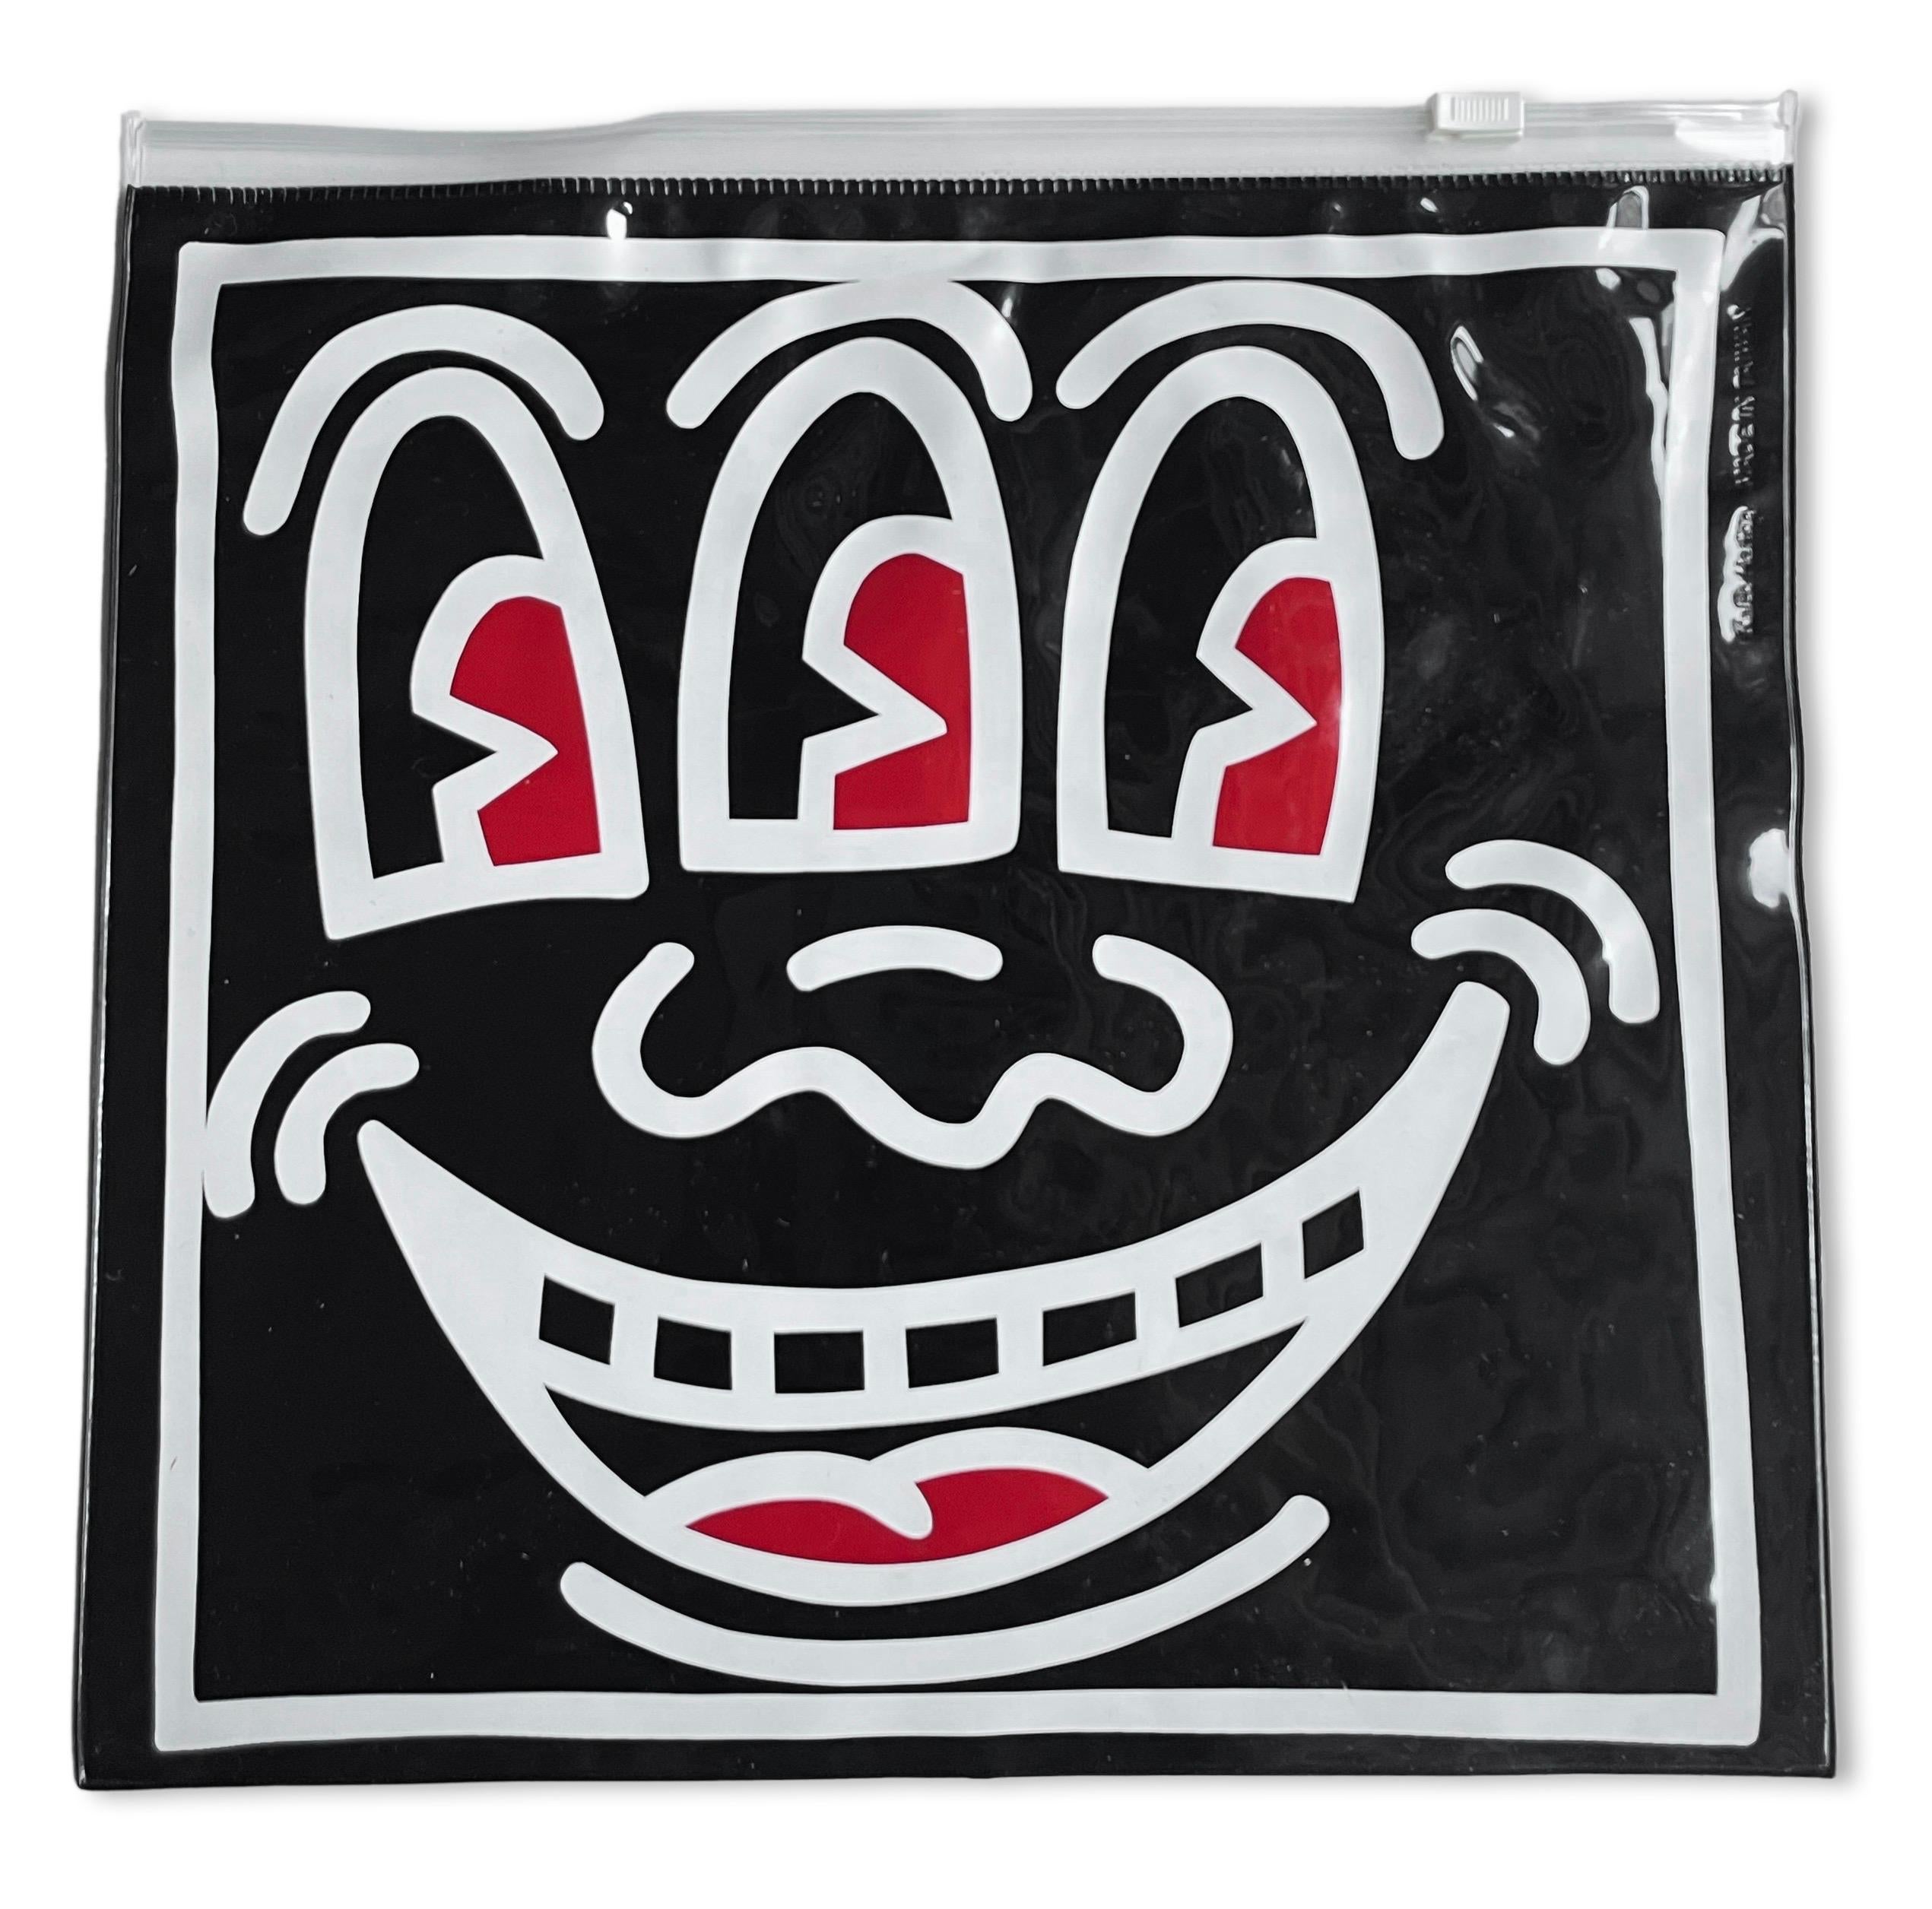 Keith Haring - Objet de collection à trois têtes des années 1980 (Keith Haring Pop Shop)